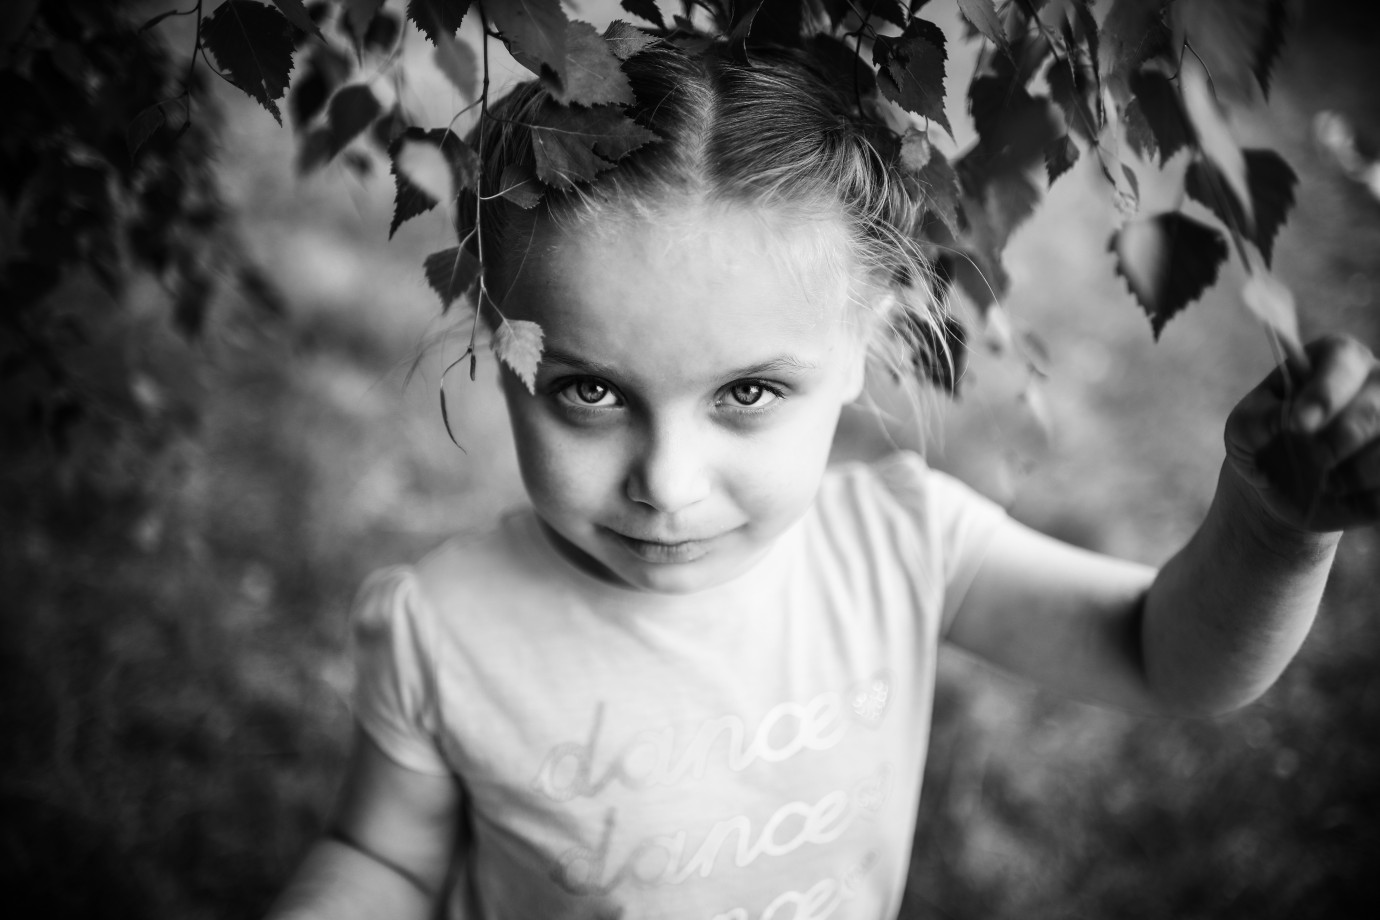 fotograf bydgoszcz fotofaktoria-ida-fuks portfolio sesje dzieciece fotografia dziecieca sesja urodzinowa